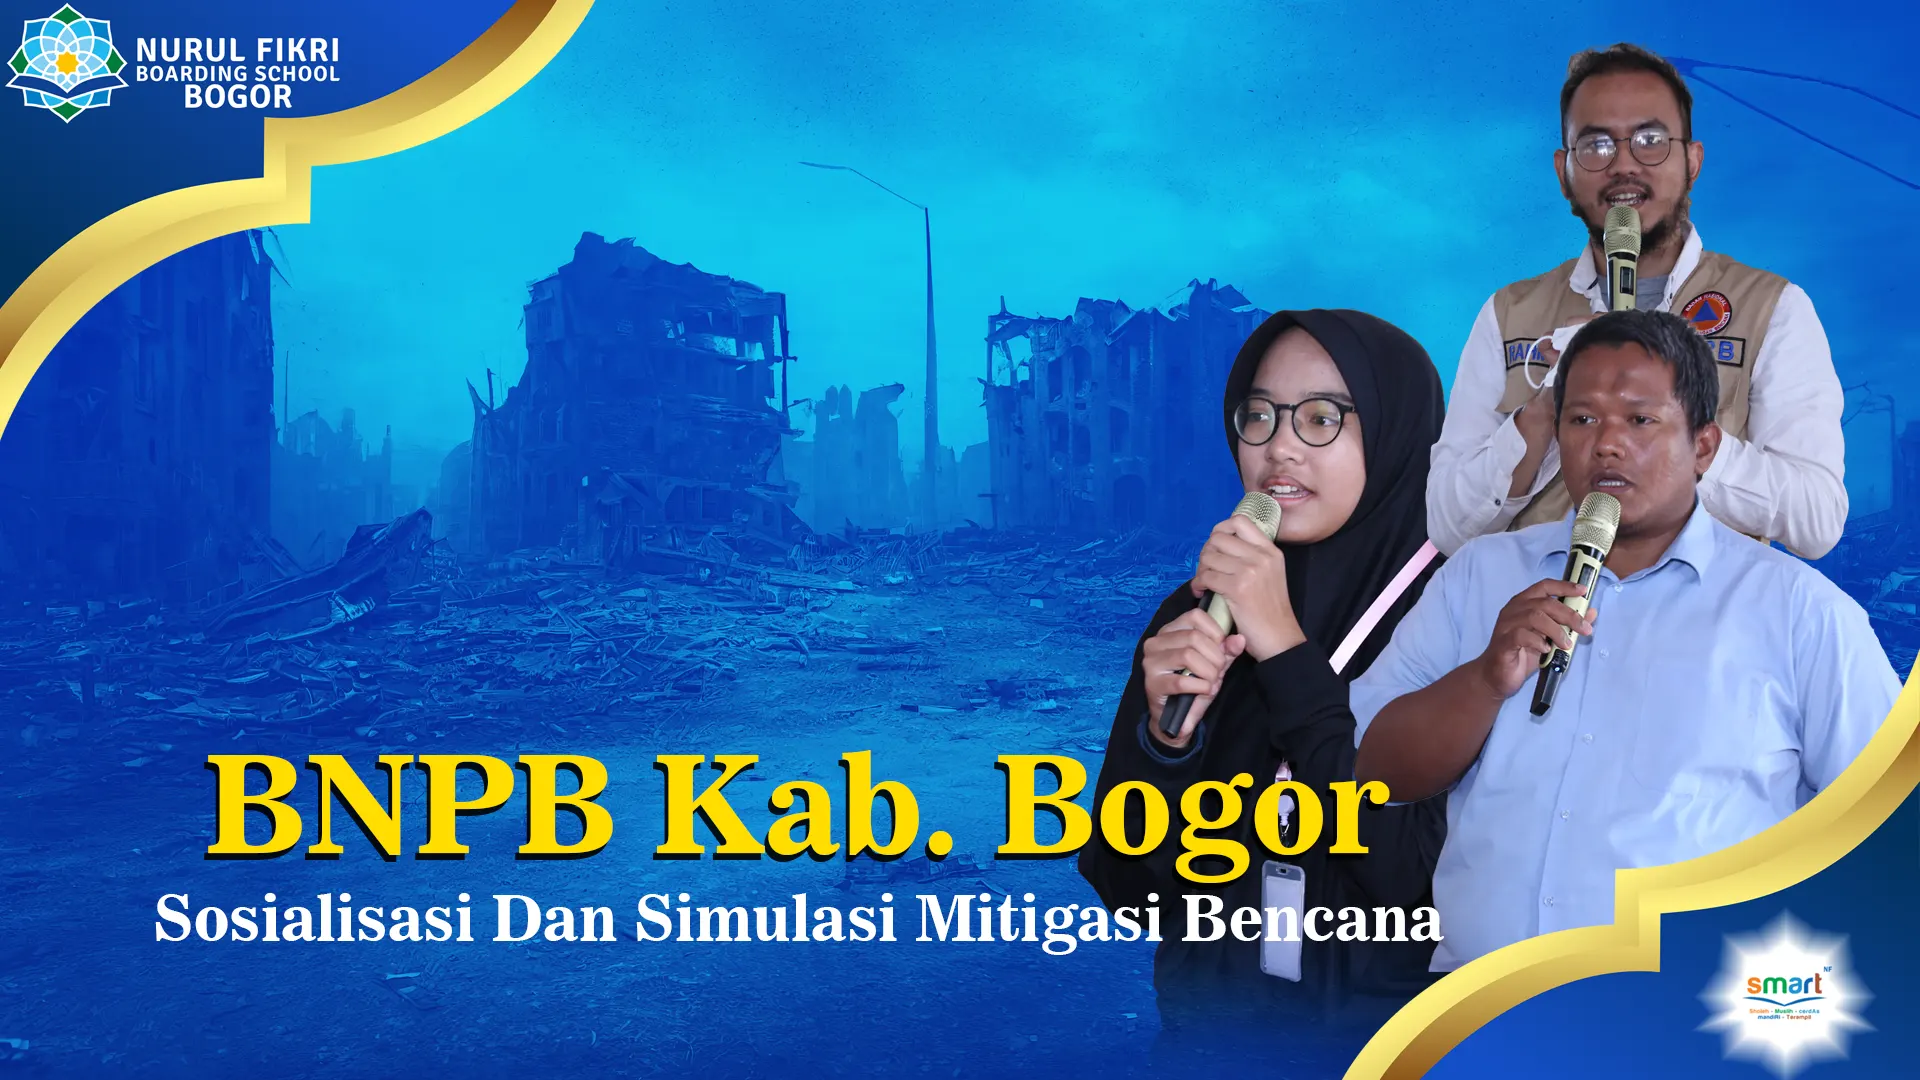 BNPB berikan Sosialisasi dan Simulasi Mitigasi Bencana kepada siswa NFBS Bogor